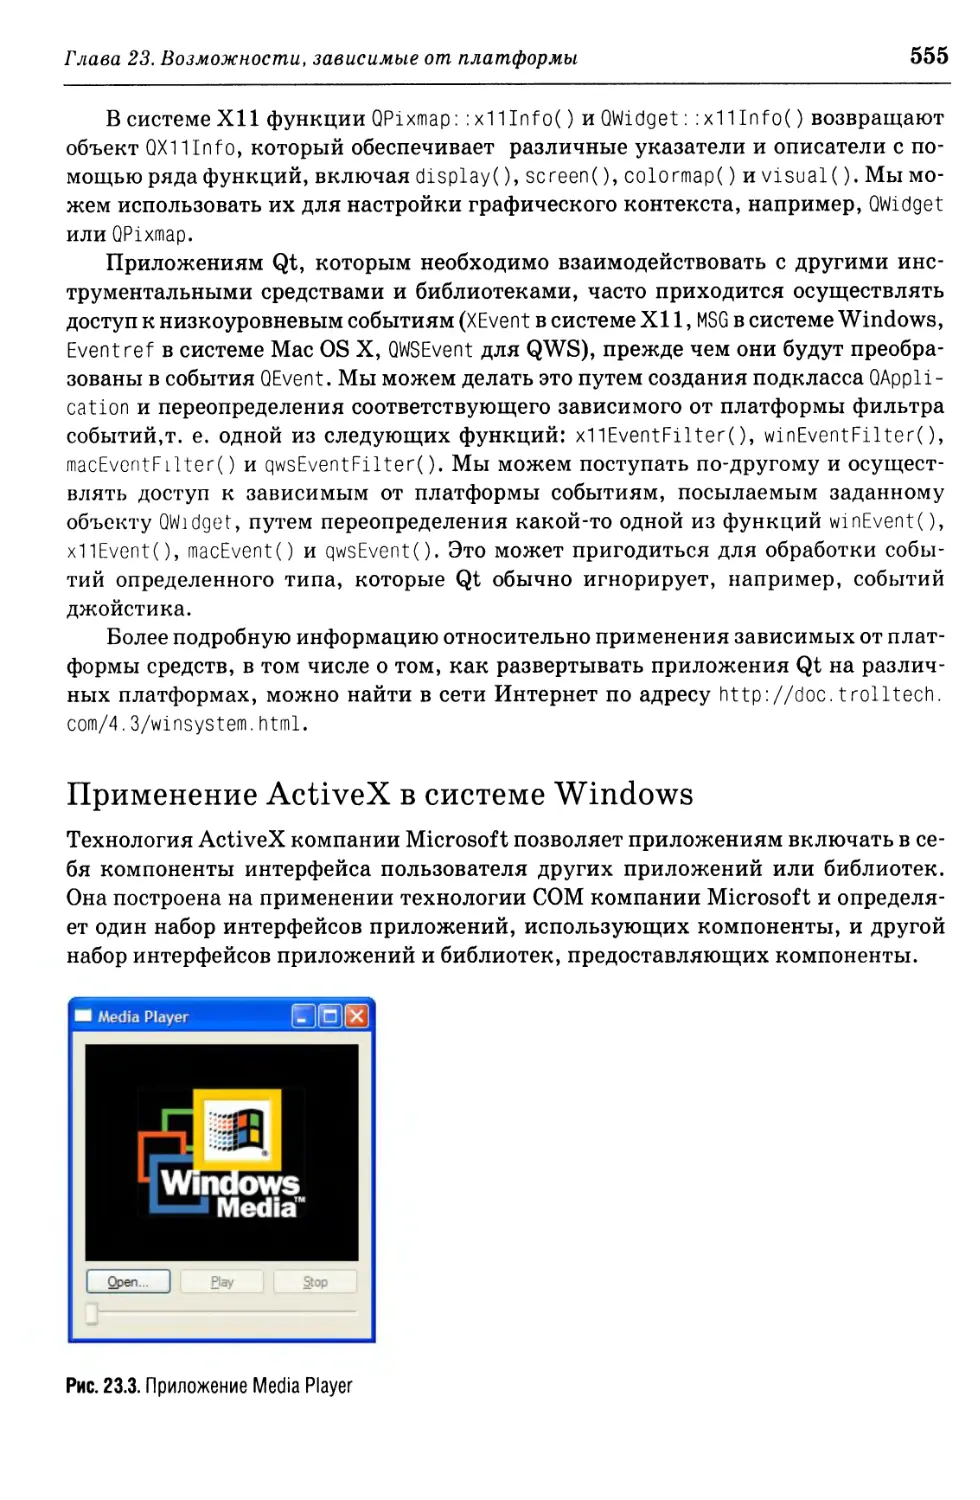 Применение ActiveX в системе Windows